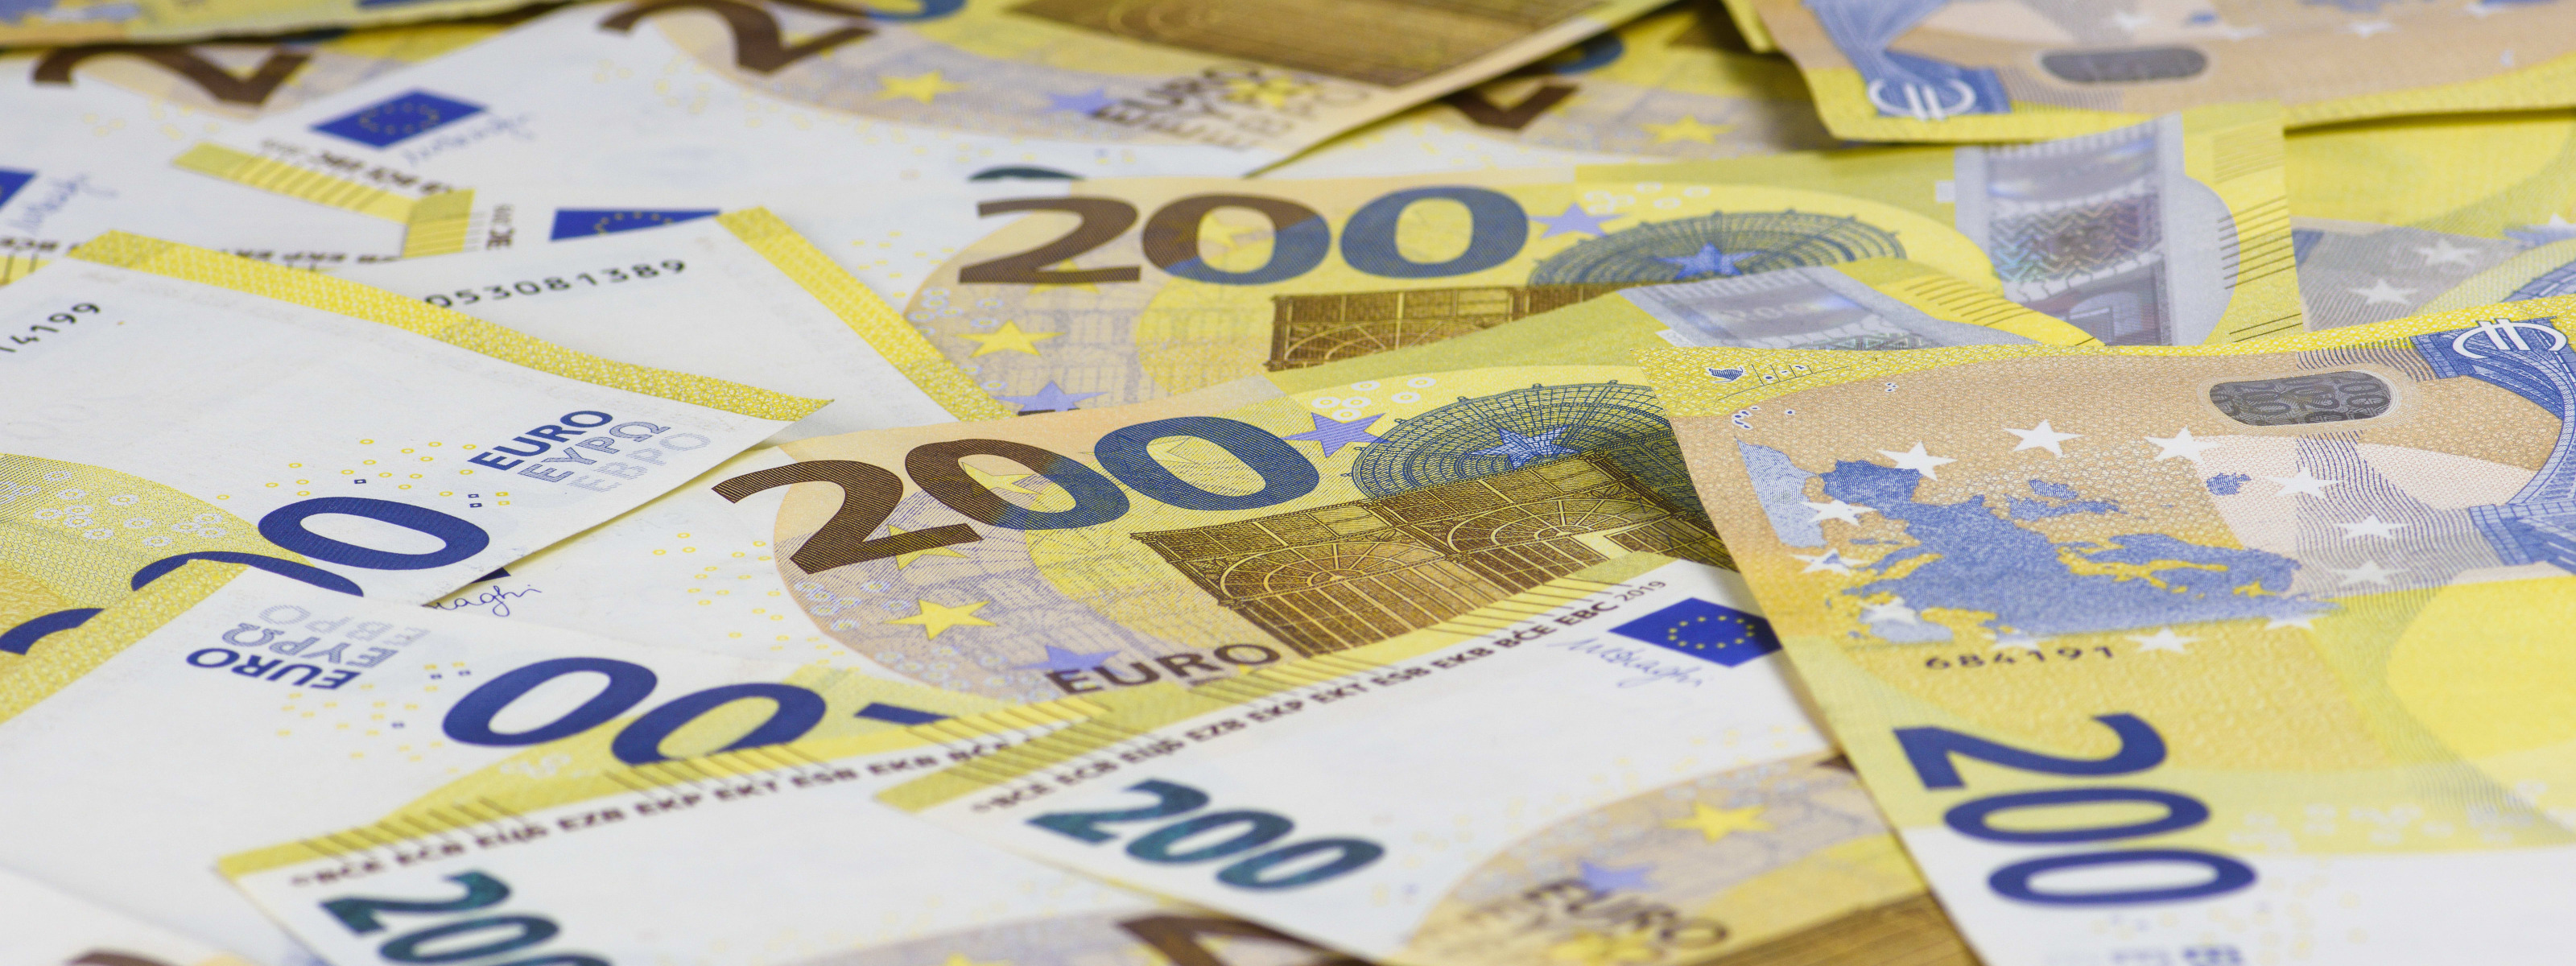 Que significa estado alta en la ayuda de 200 euros